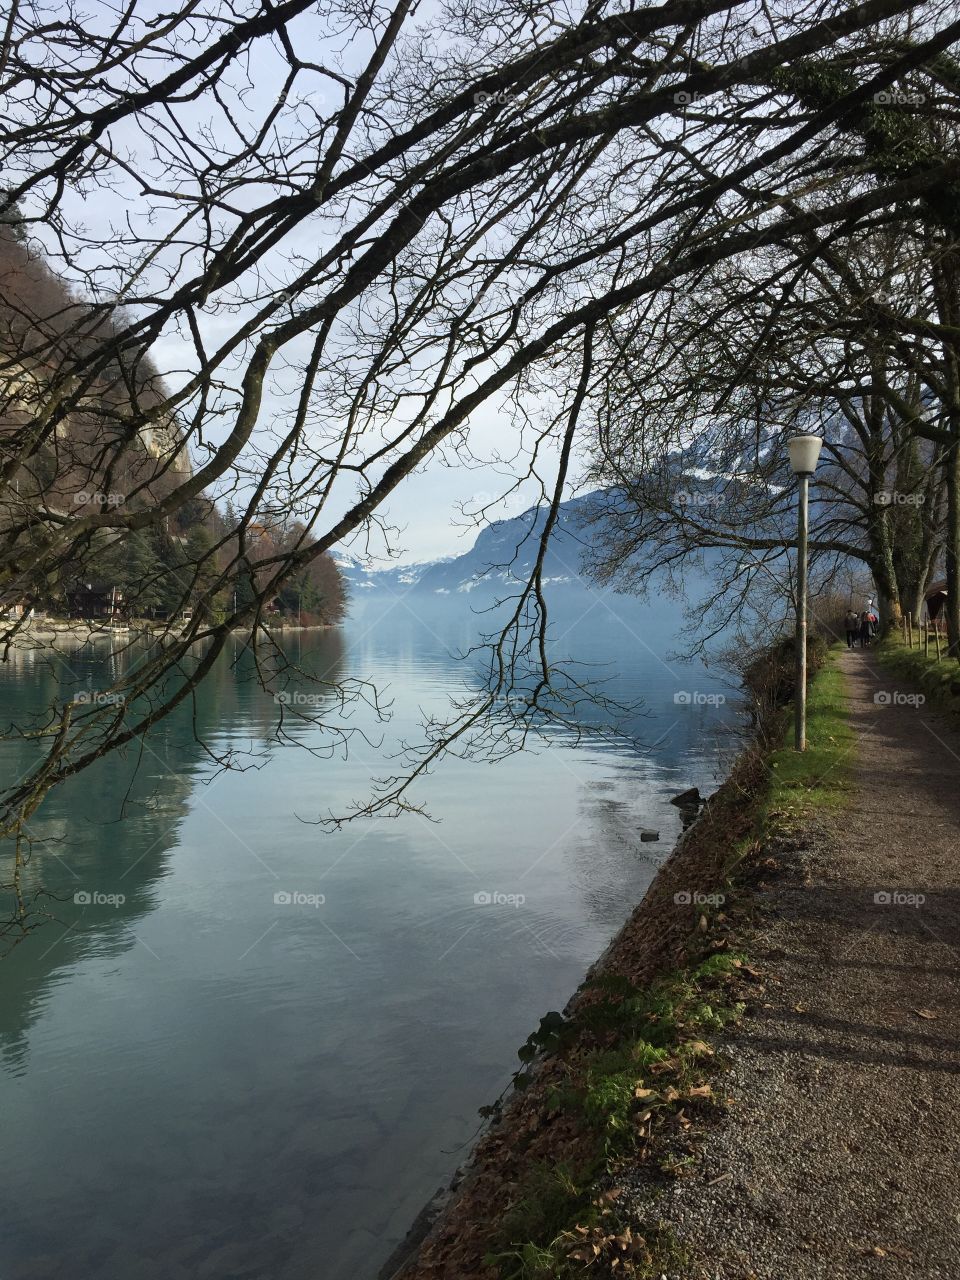 Lake Brienz, Interlaken, Switzerland in November 